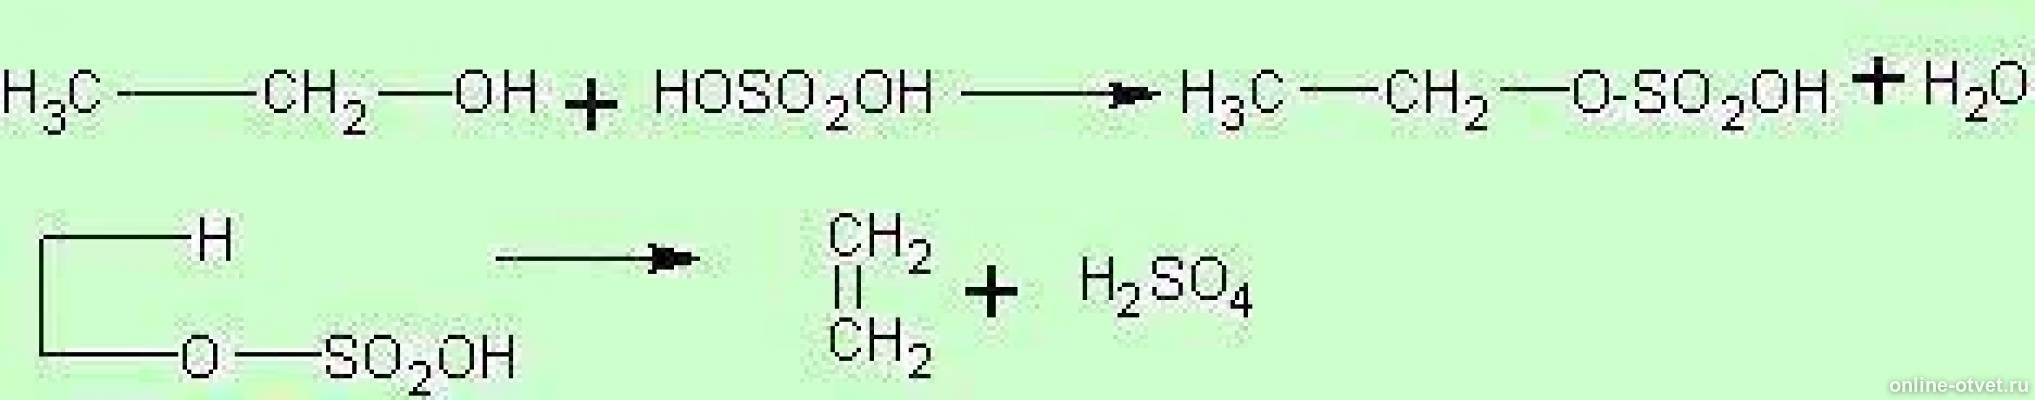 Нагревание этанола с концентрированной серной кислотой. Взаимодействие спиртов с концентрированной серной кислотой. Взаимодействие этанола с концентрированной серной кислотой. Реакции с концентрированной серной кислотой. Реакция взаимодействия этанола с концентрированной серной кислотой.